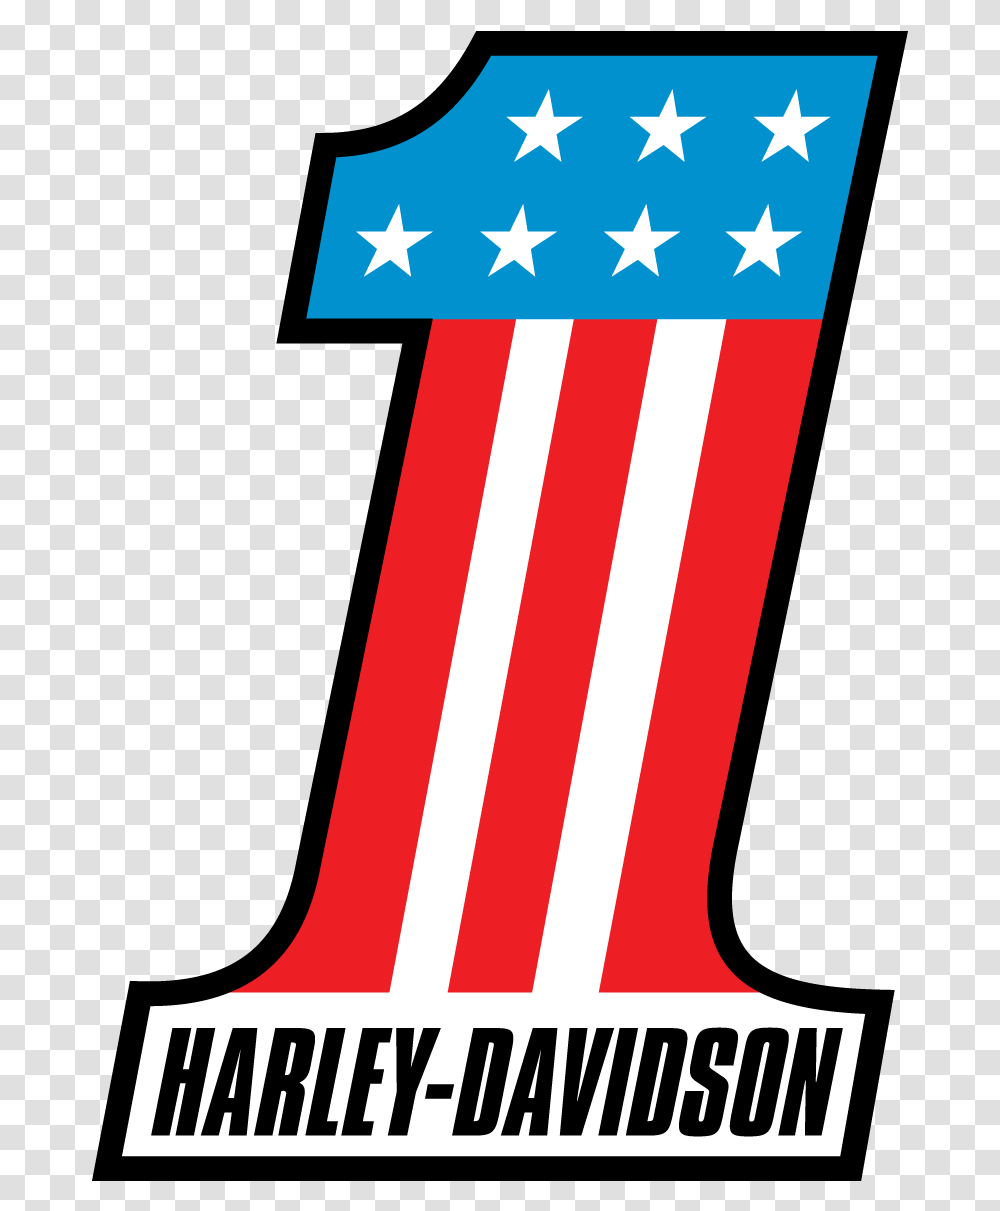 Harley Davidson One Stars Stripes Logo Vector Free Harley Davidson Dark Logo Vector, Flag, American Flag Transparent Png